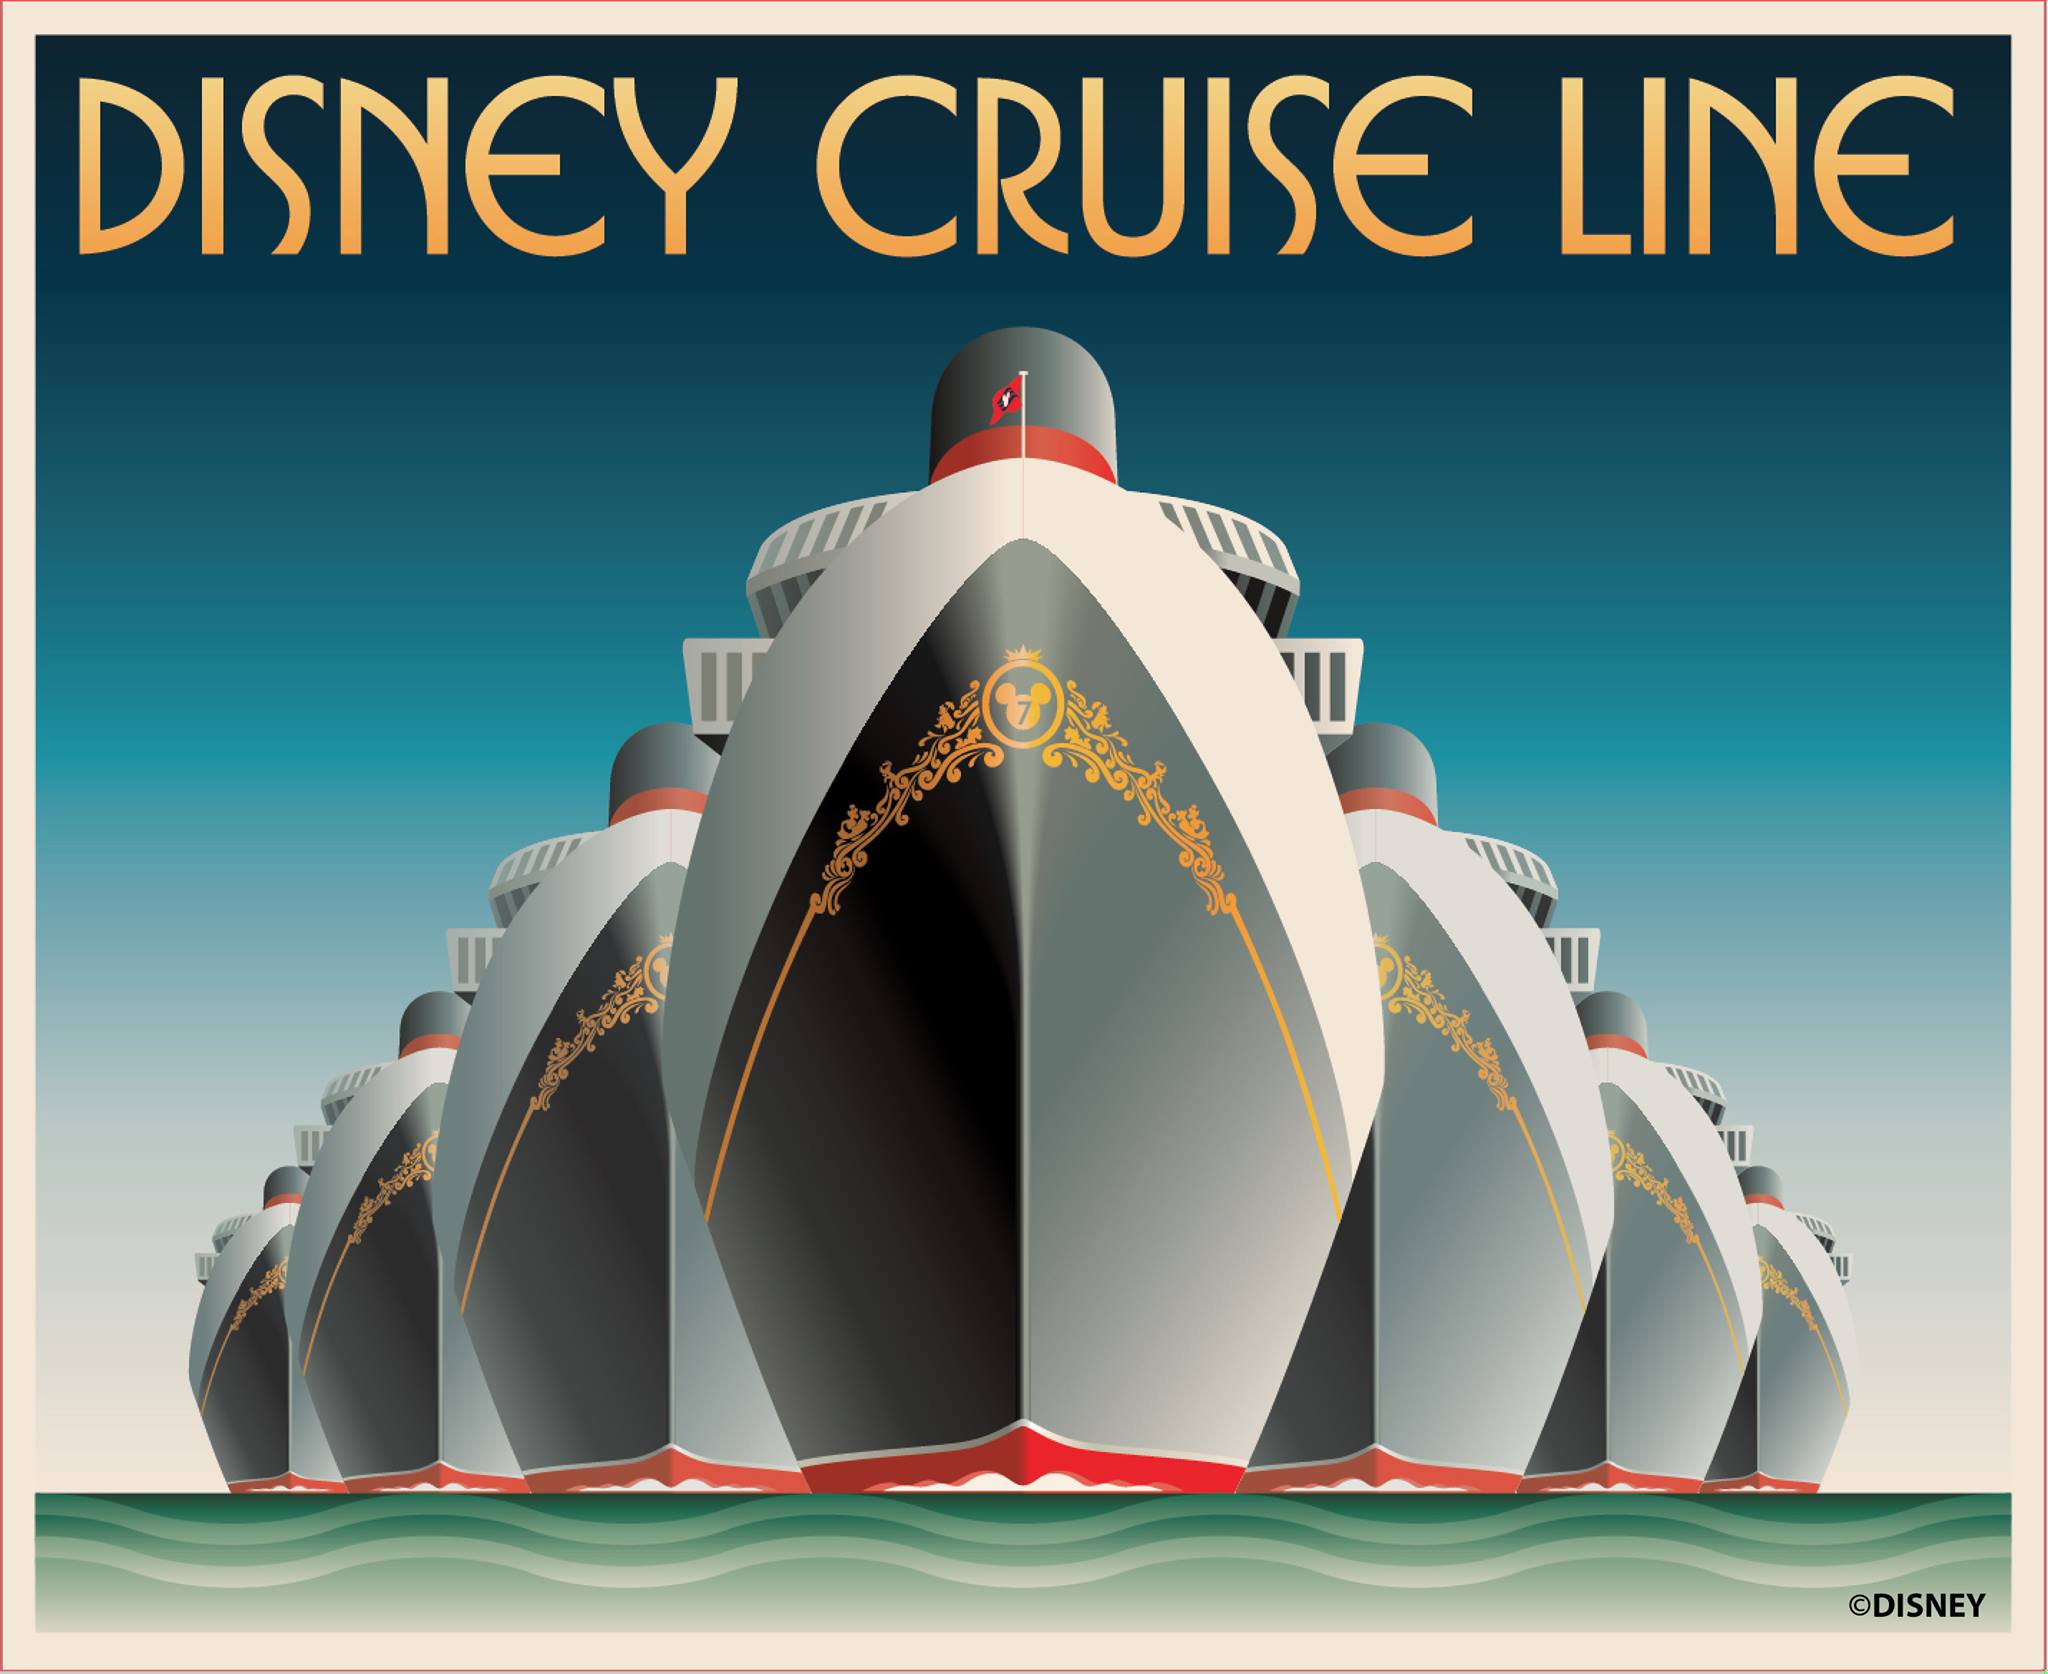 Disney Cruise Line bestellt nach